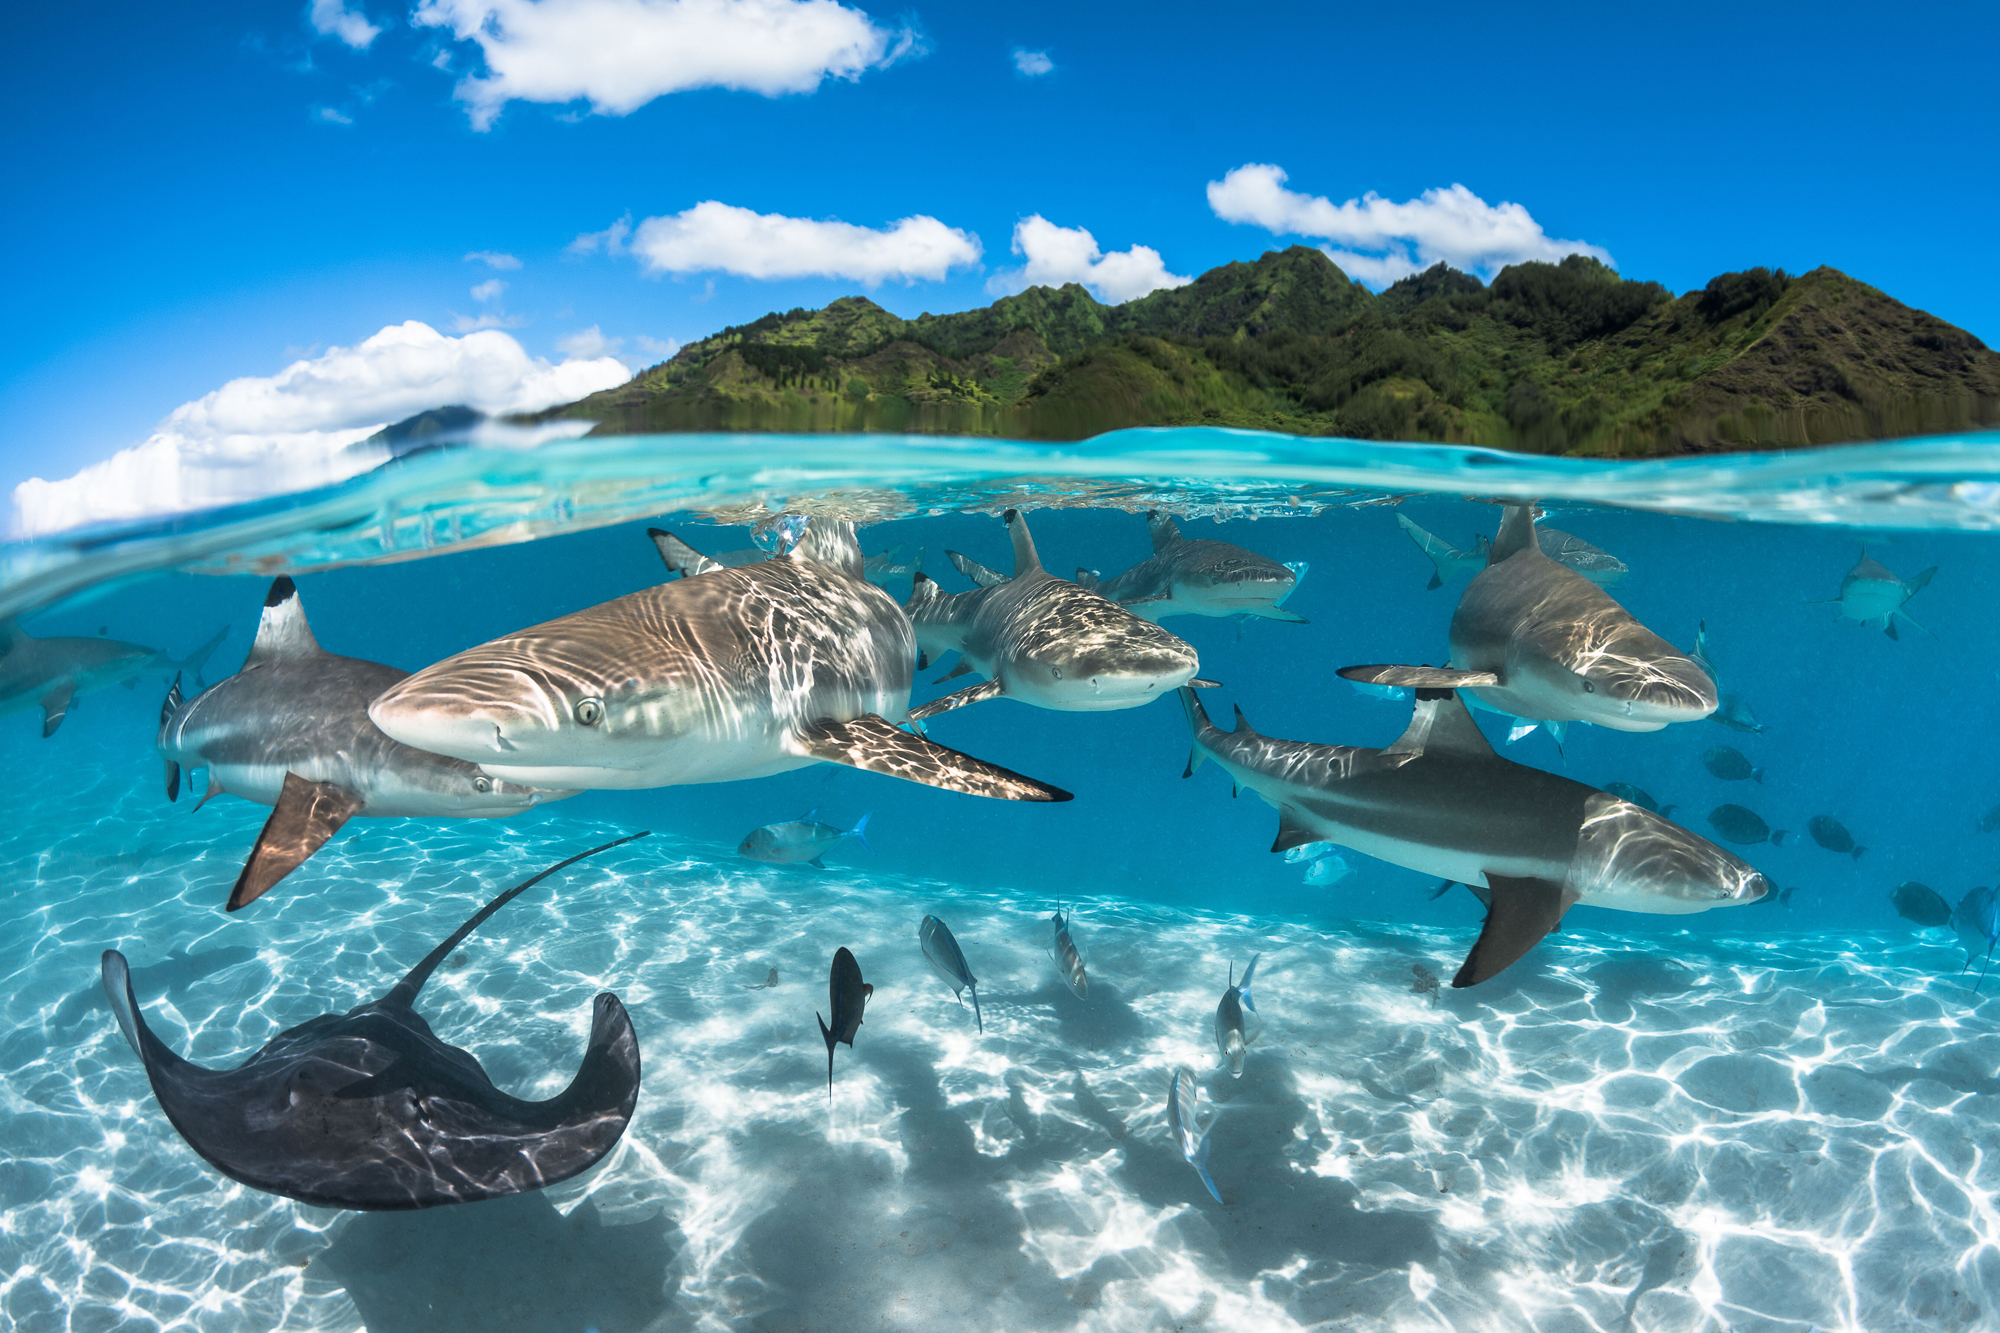 Requins à pointe noire dans le lagon Moorea, près de Tahiti